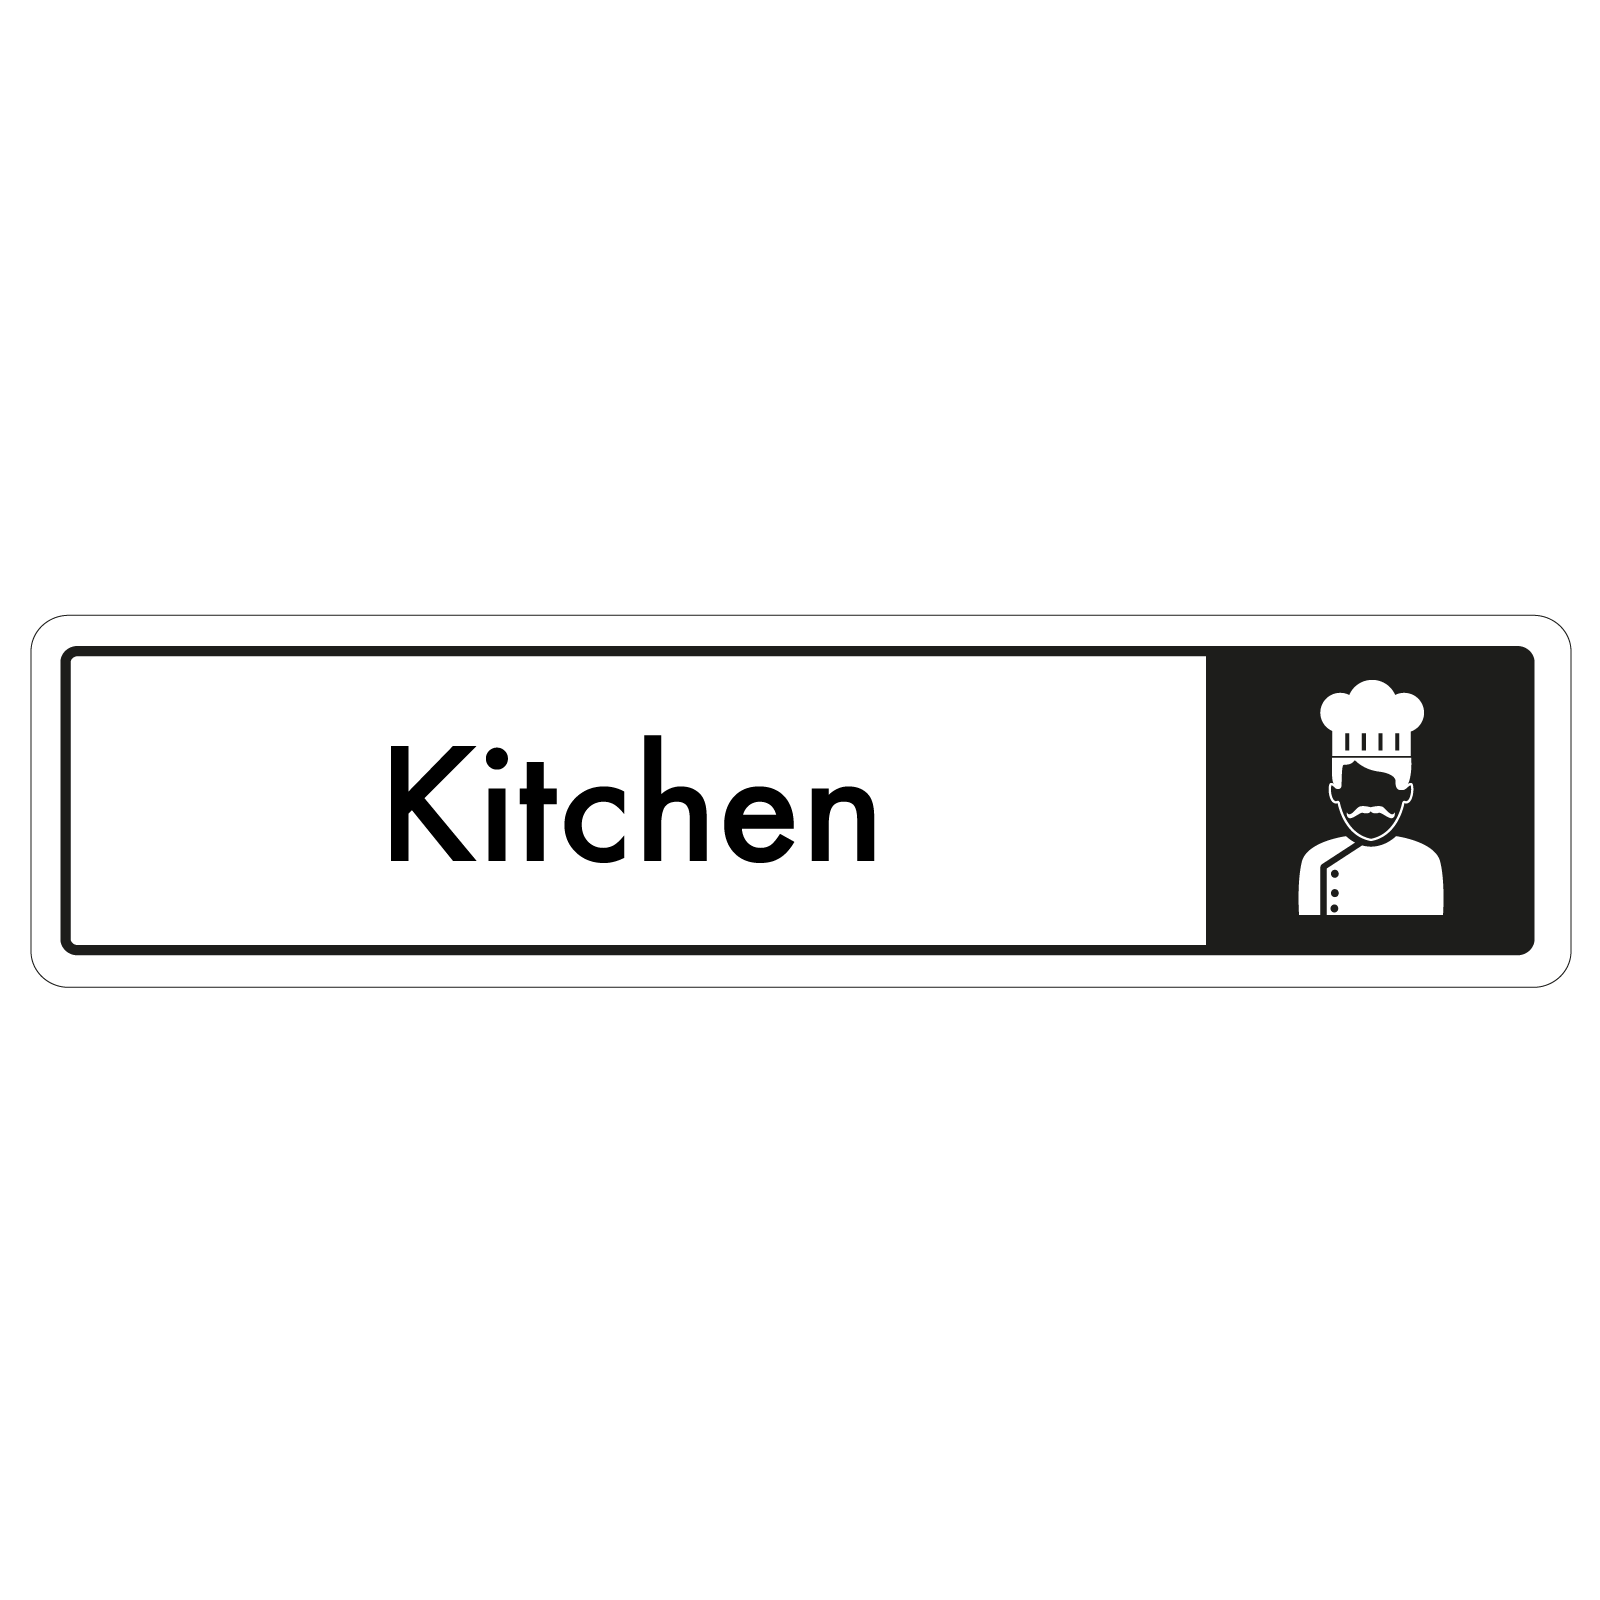 Kitchen Door Sign - Black on White 